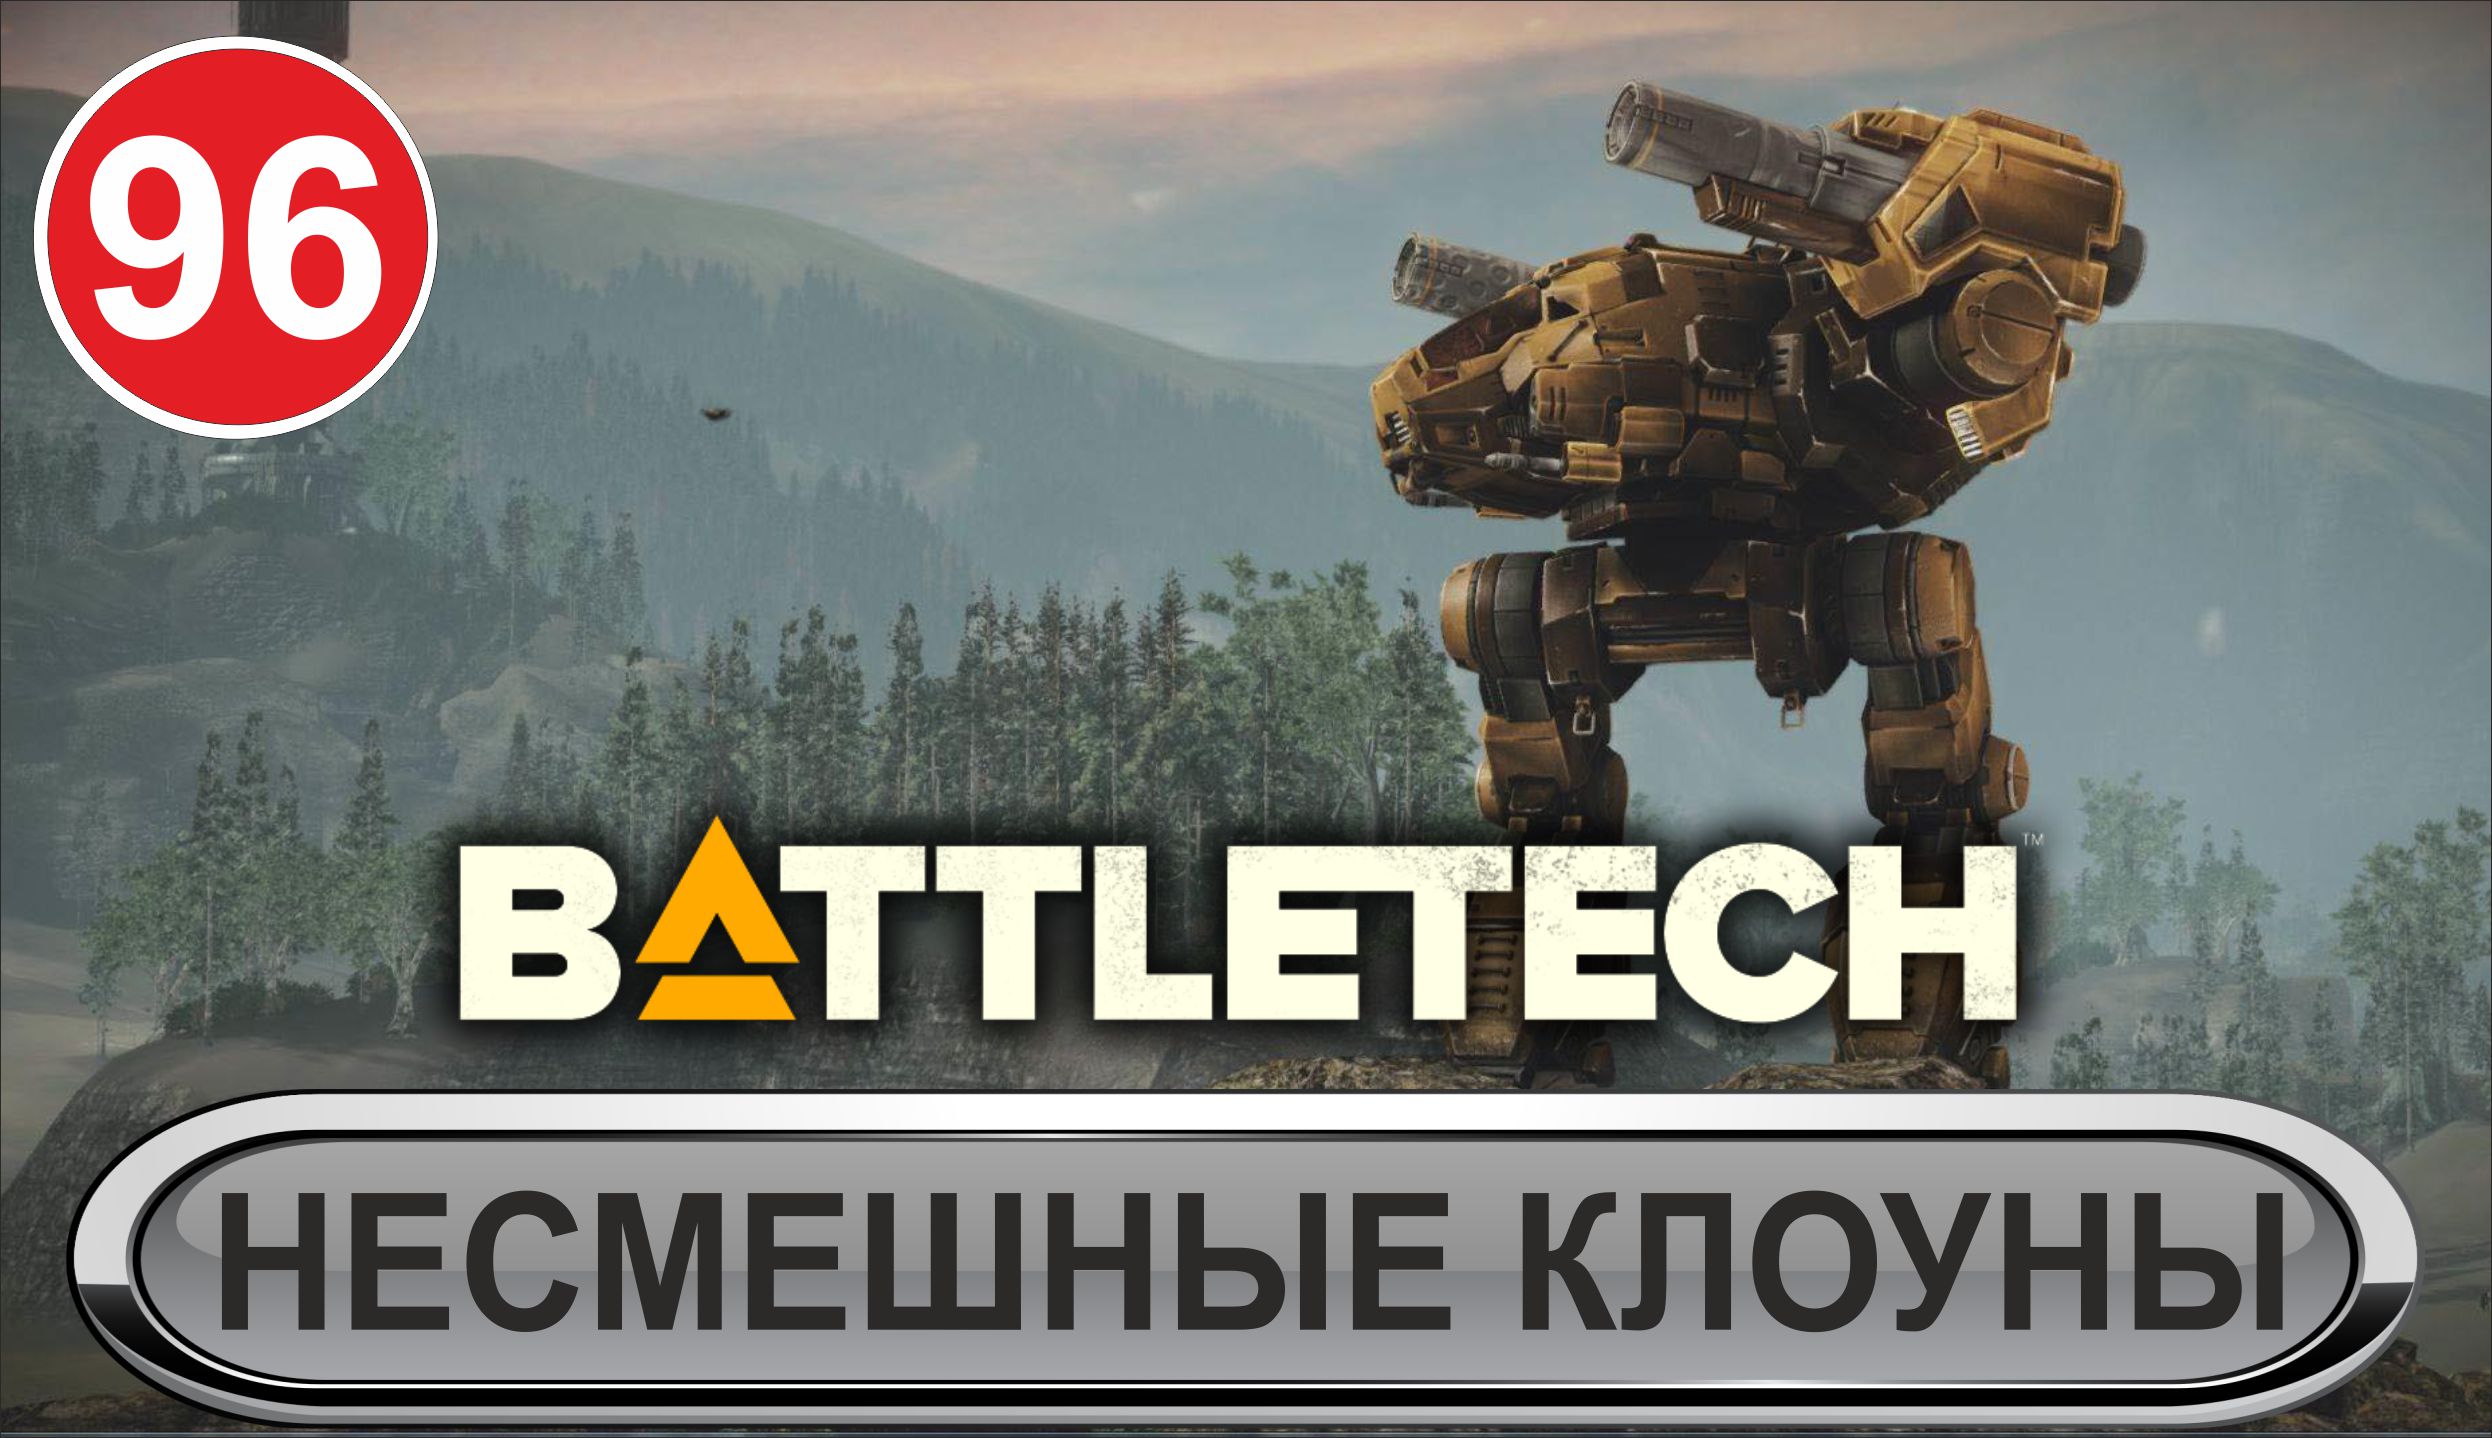 Battletech - Несмешные клоуны